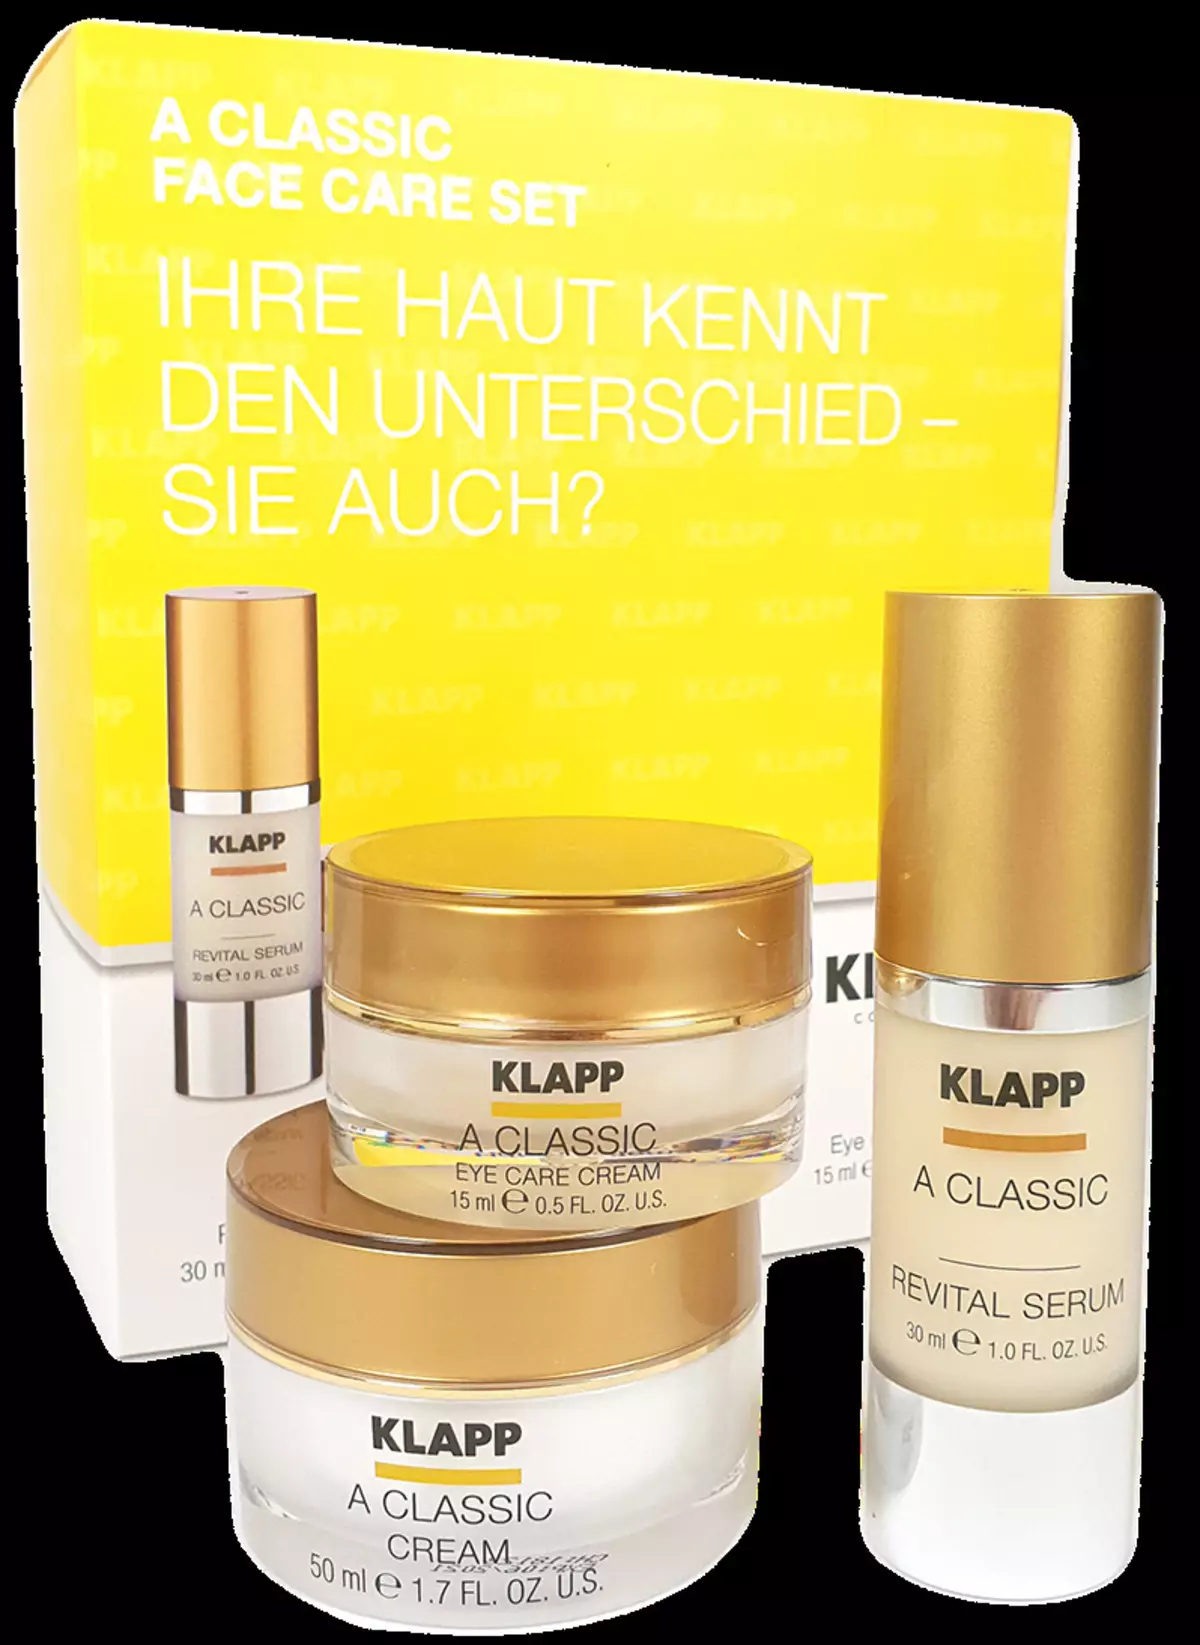 Kozmetika Klapp: Nemška profesionalna kozmetika za obraz in telo, pregledi kozmetologov 4661_29